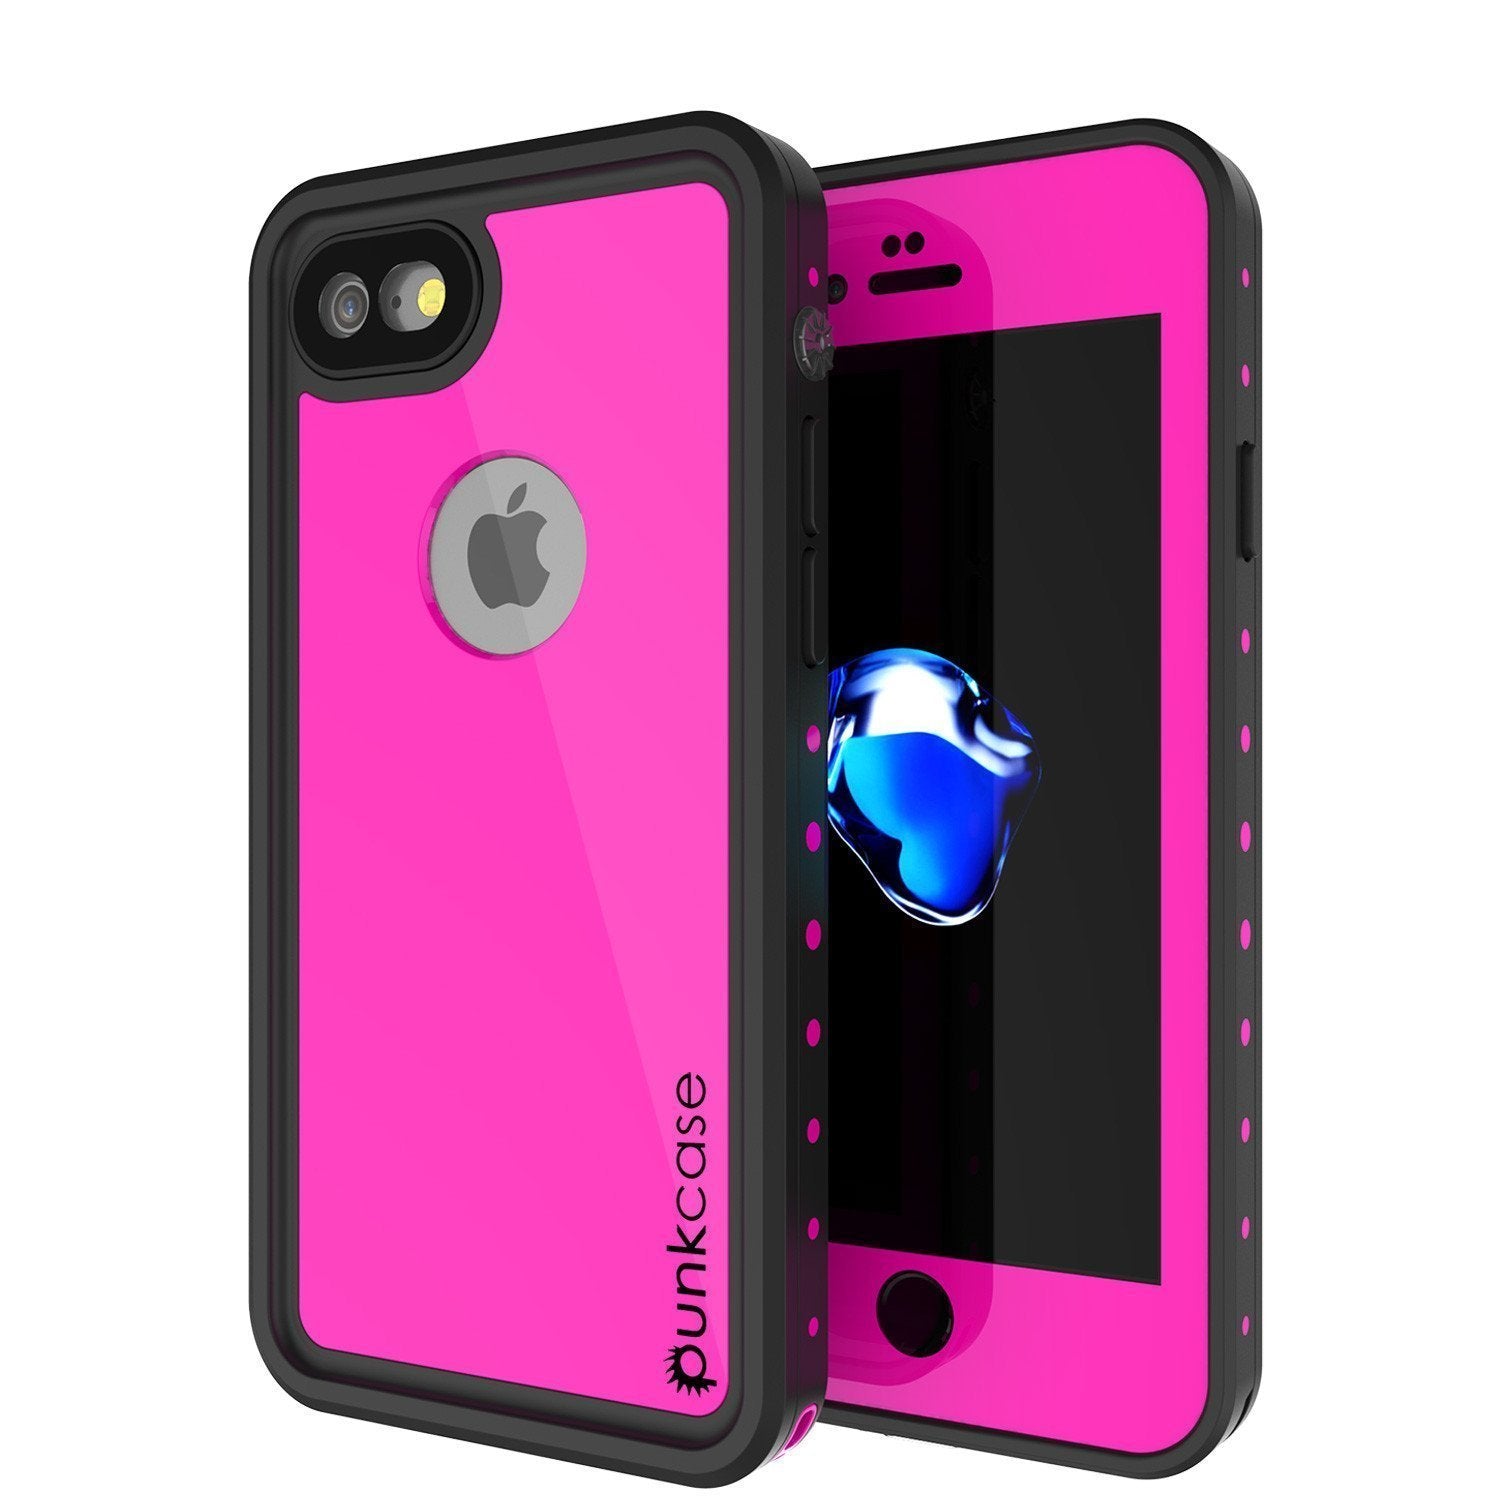 iPhone SE (4.7") Waterproof Case, Punkcase [Pink] [StudStar Series] [Slim Fit][IP68 Certified]  [Dirtproof] [Snowproof] (Color in image: pink)